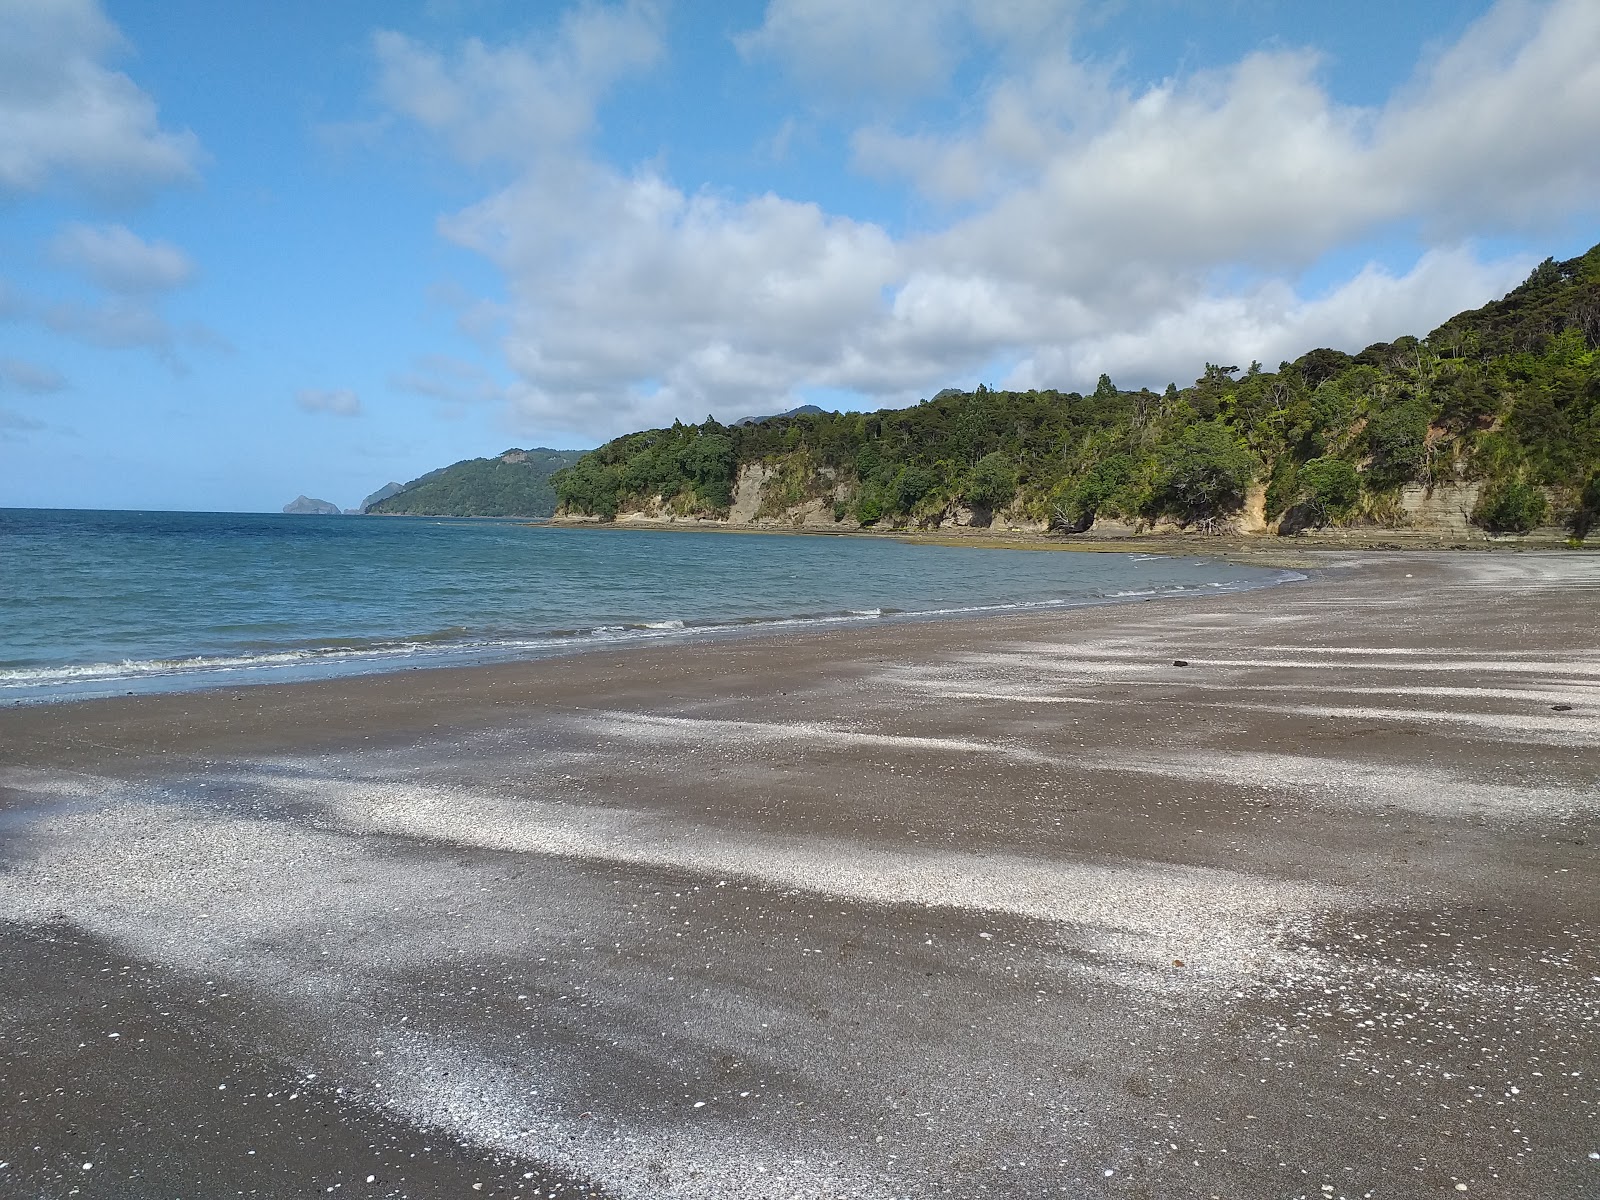 Kaitarakihi Beach'in fotoğrafı gri kum yüzey ile